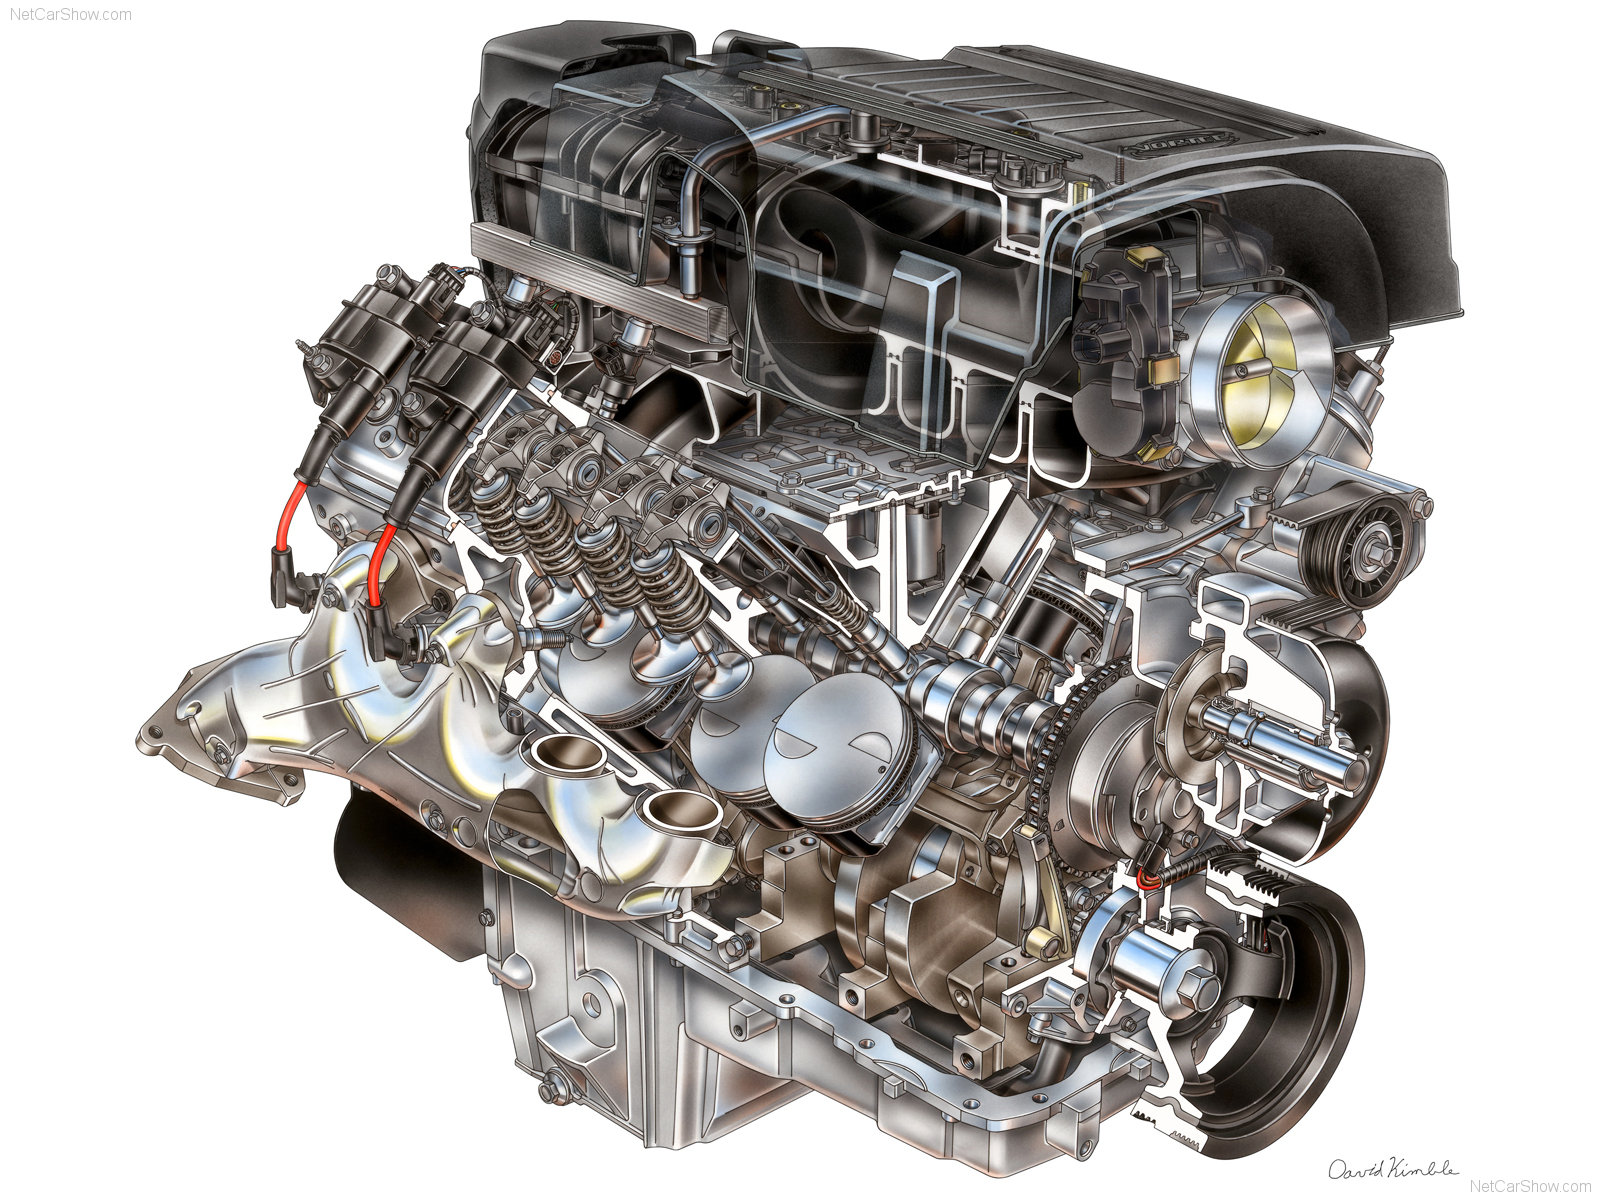 Как увеличить ресурс двигателя автомобиля: Как увеличить ресурс двигателя автомобиля?